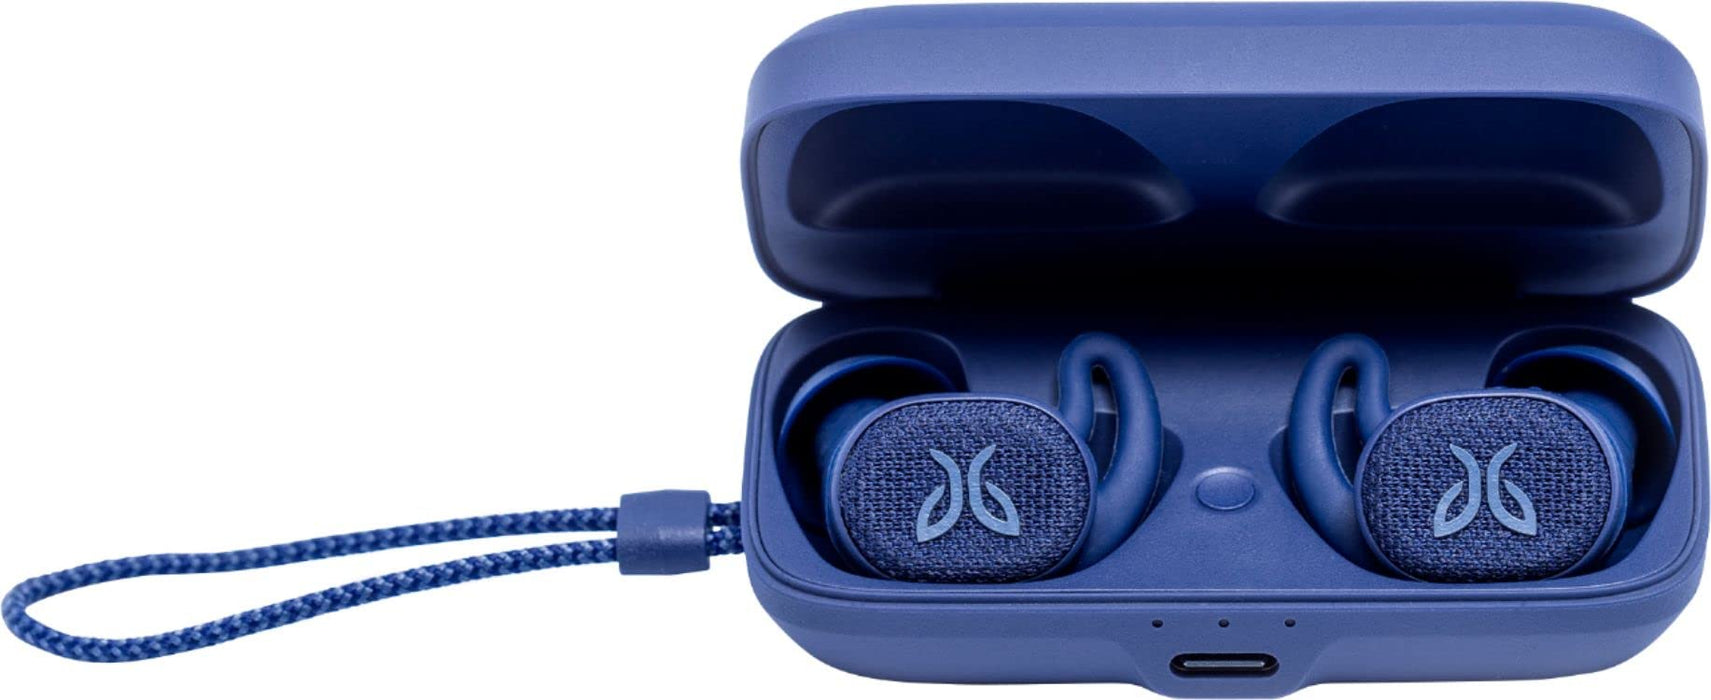 Jaybird - Vista 2 True Wireless Noise Cancelling In-Ear Headphones - Blue